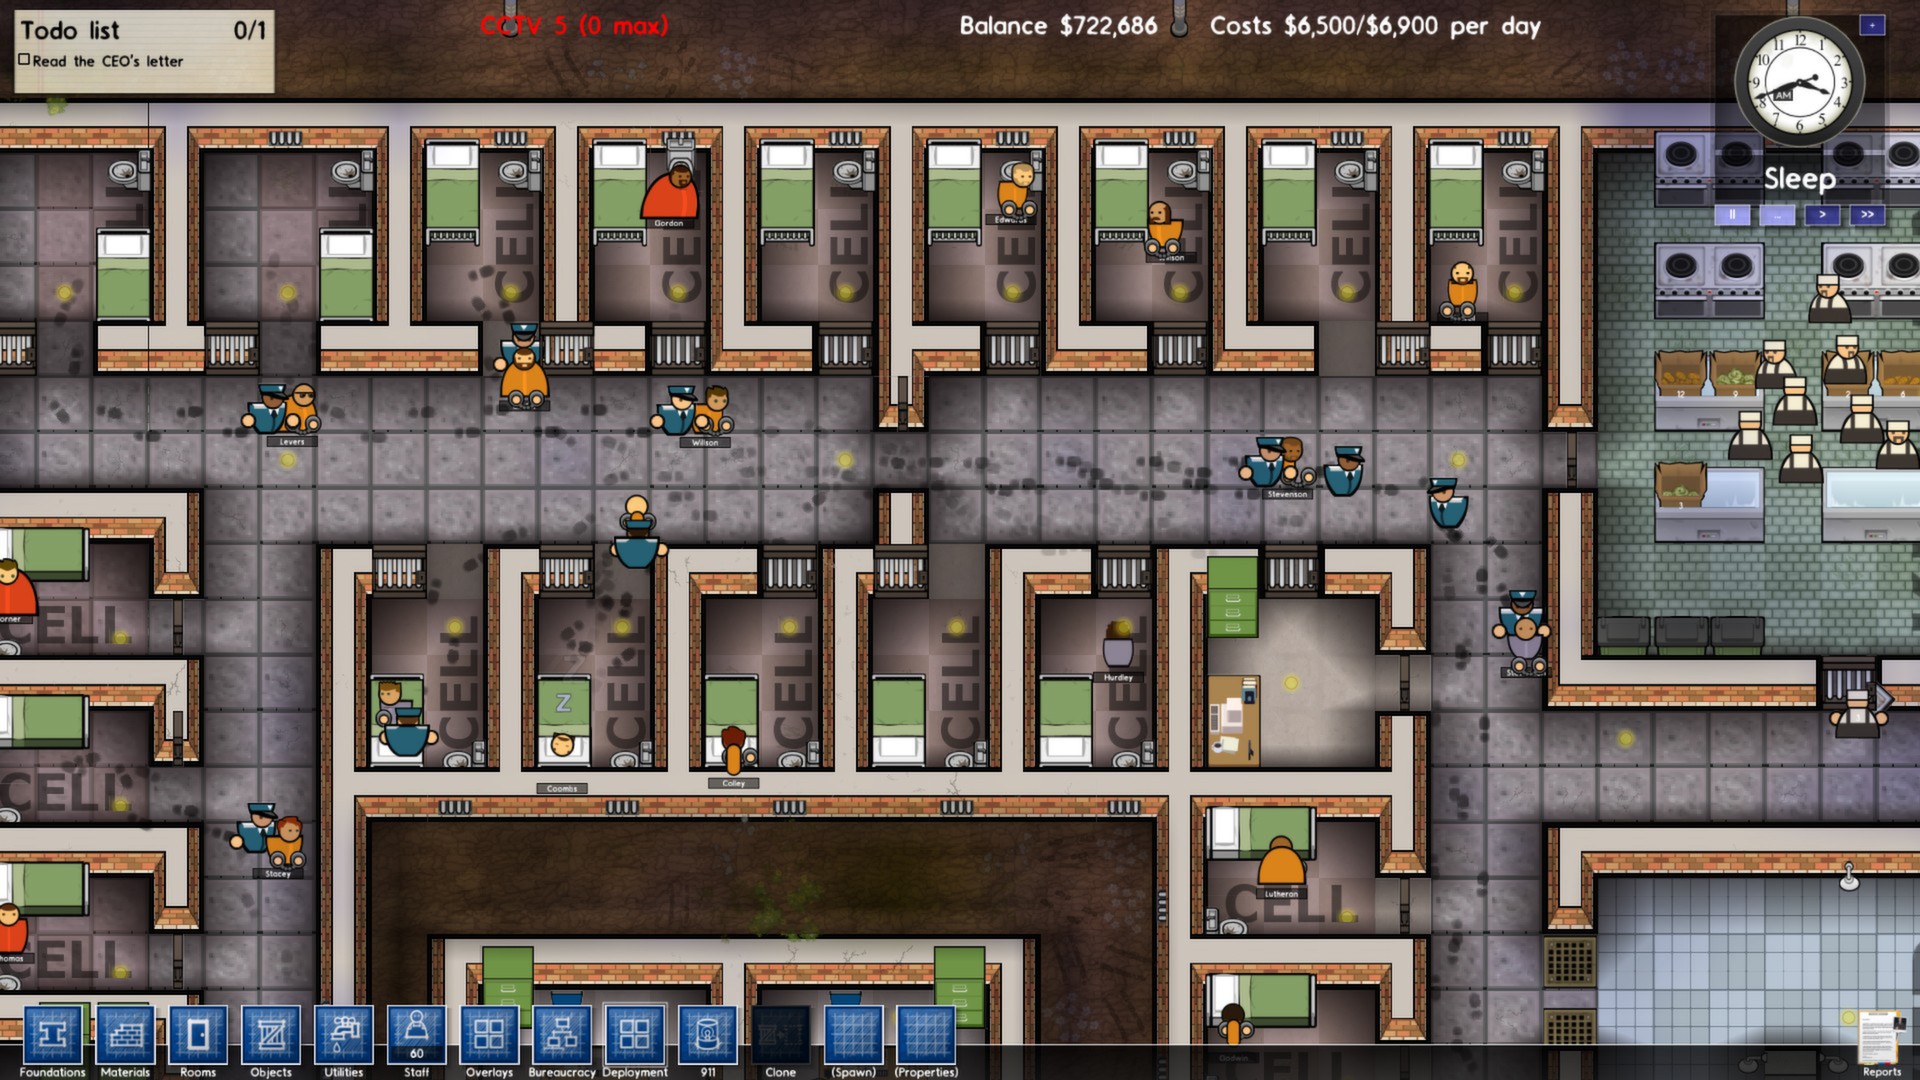 监狱建筑师最新游戏图片欣赏 监狱员很辛劳